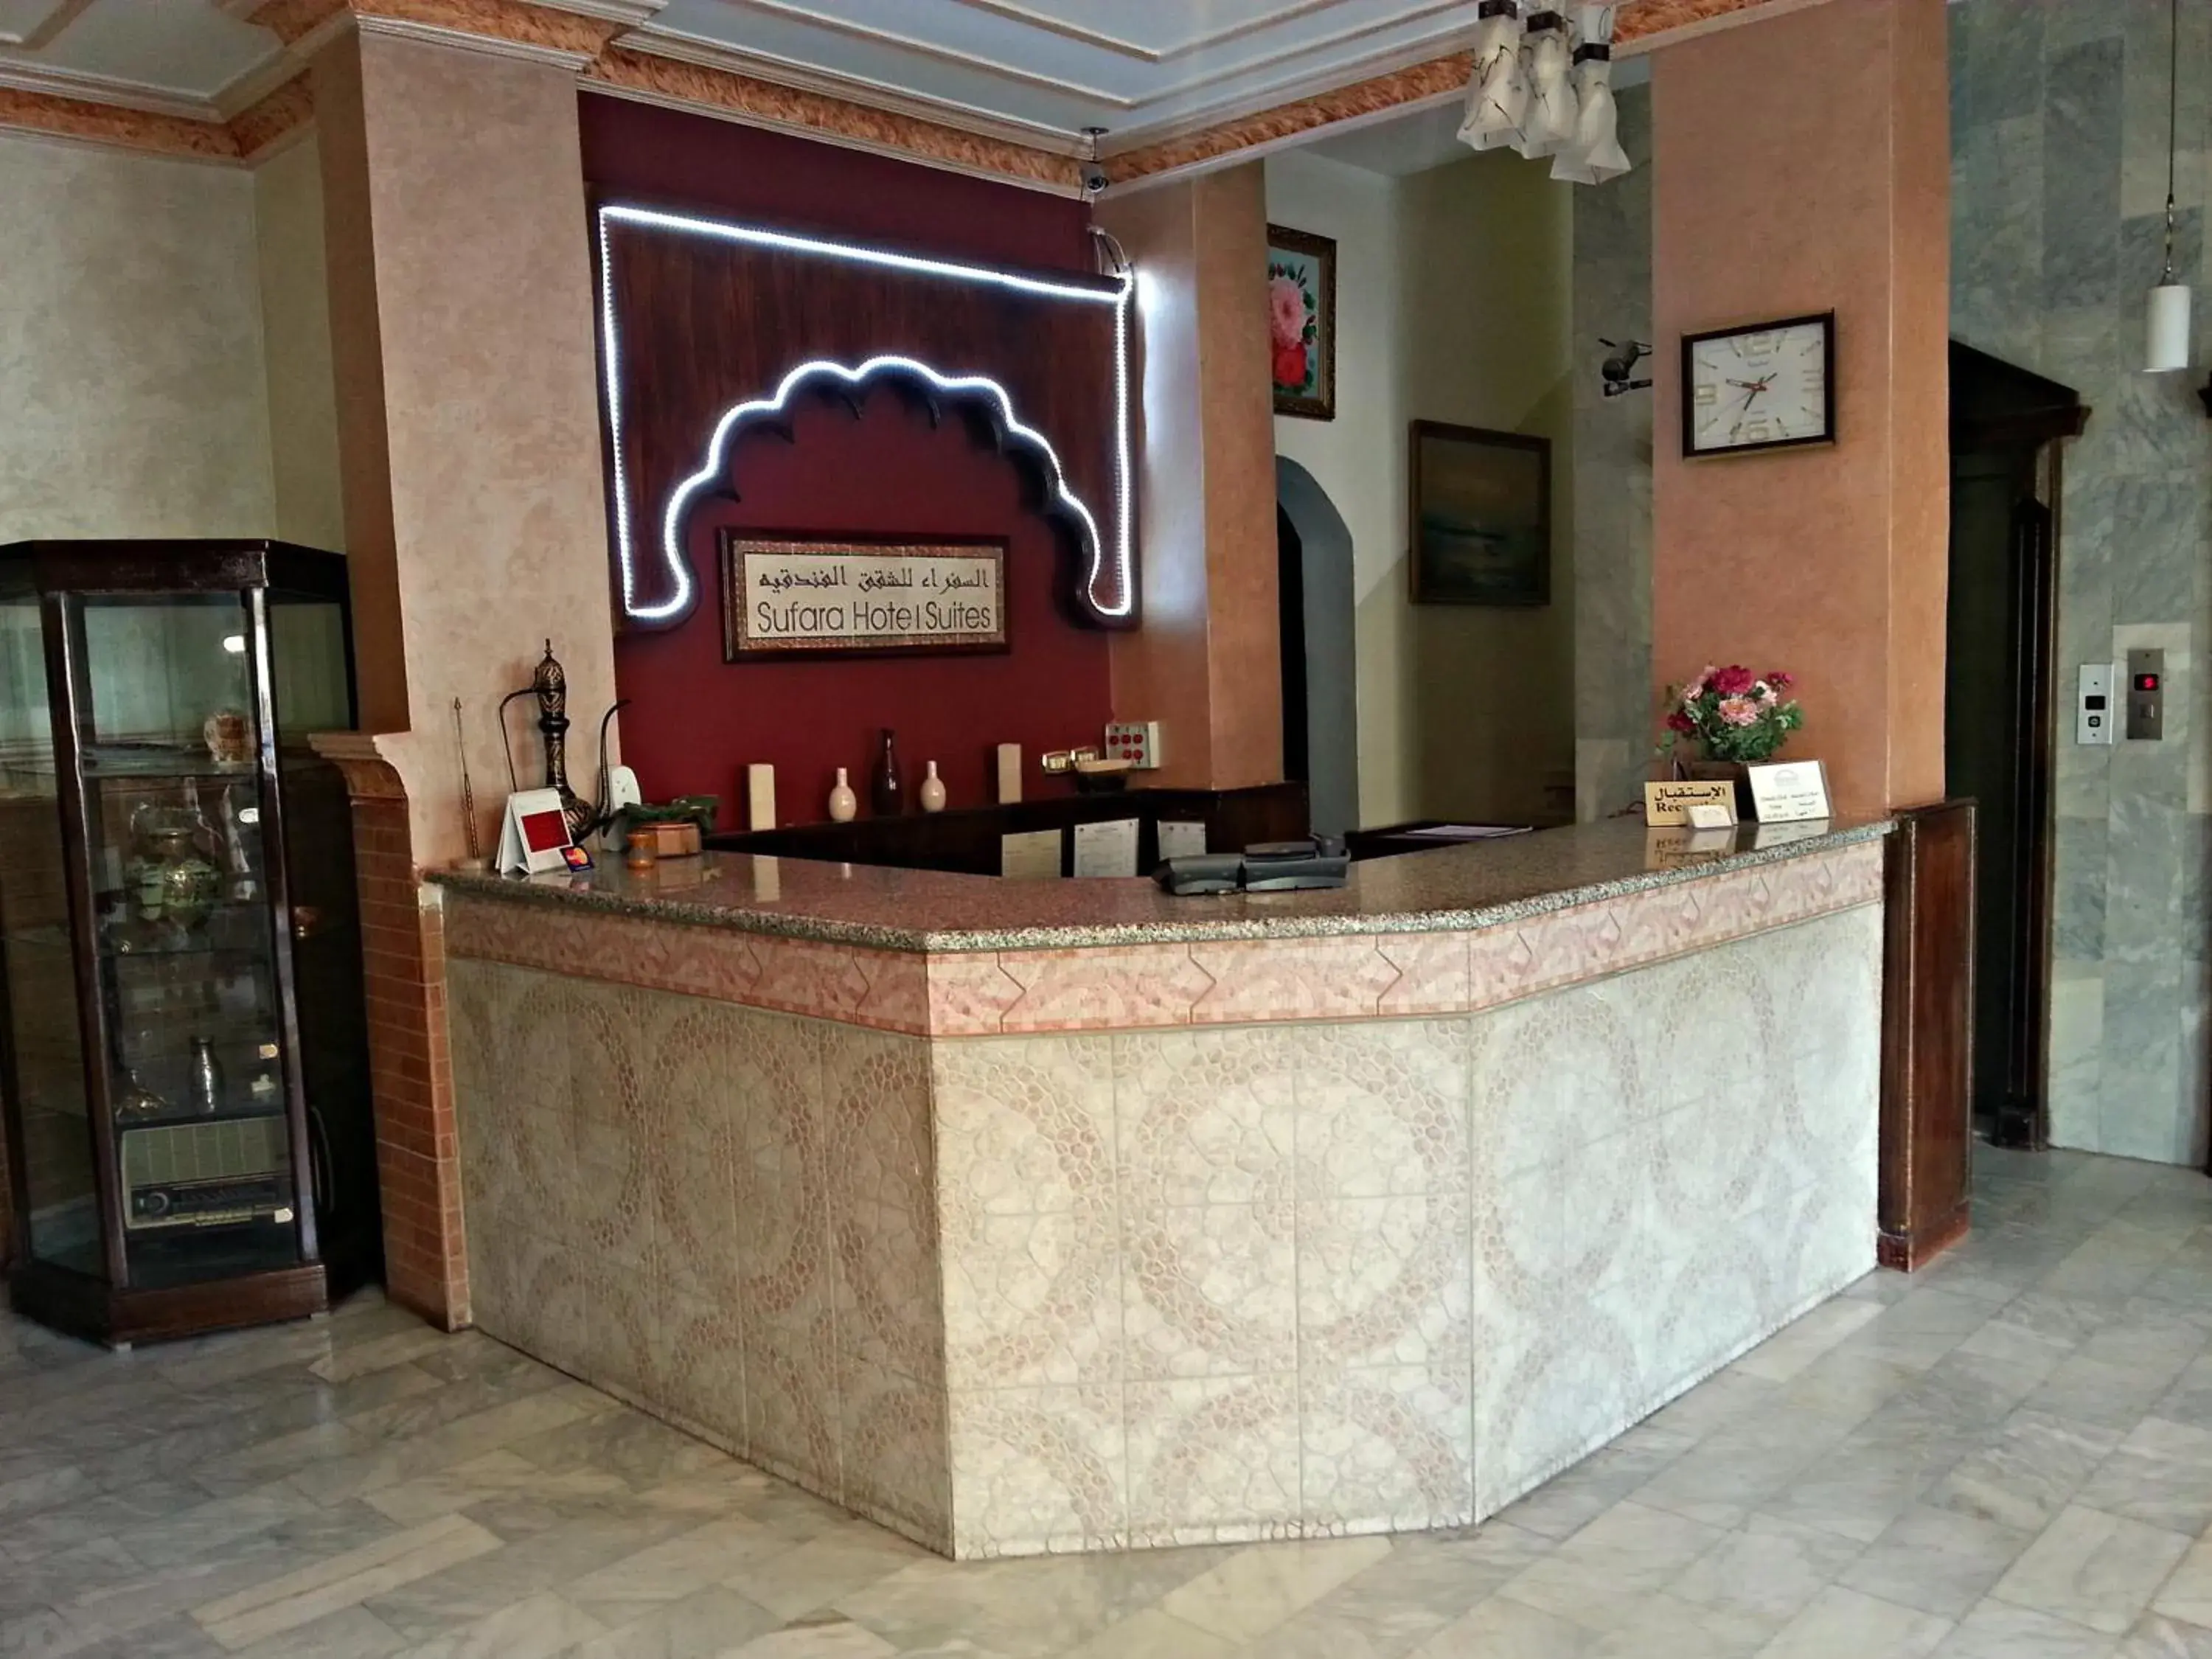 Facade/entrance, Lobby/Reception in Sufara Hotel Suites